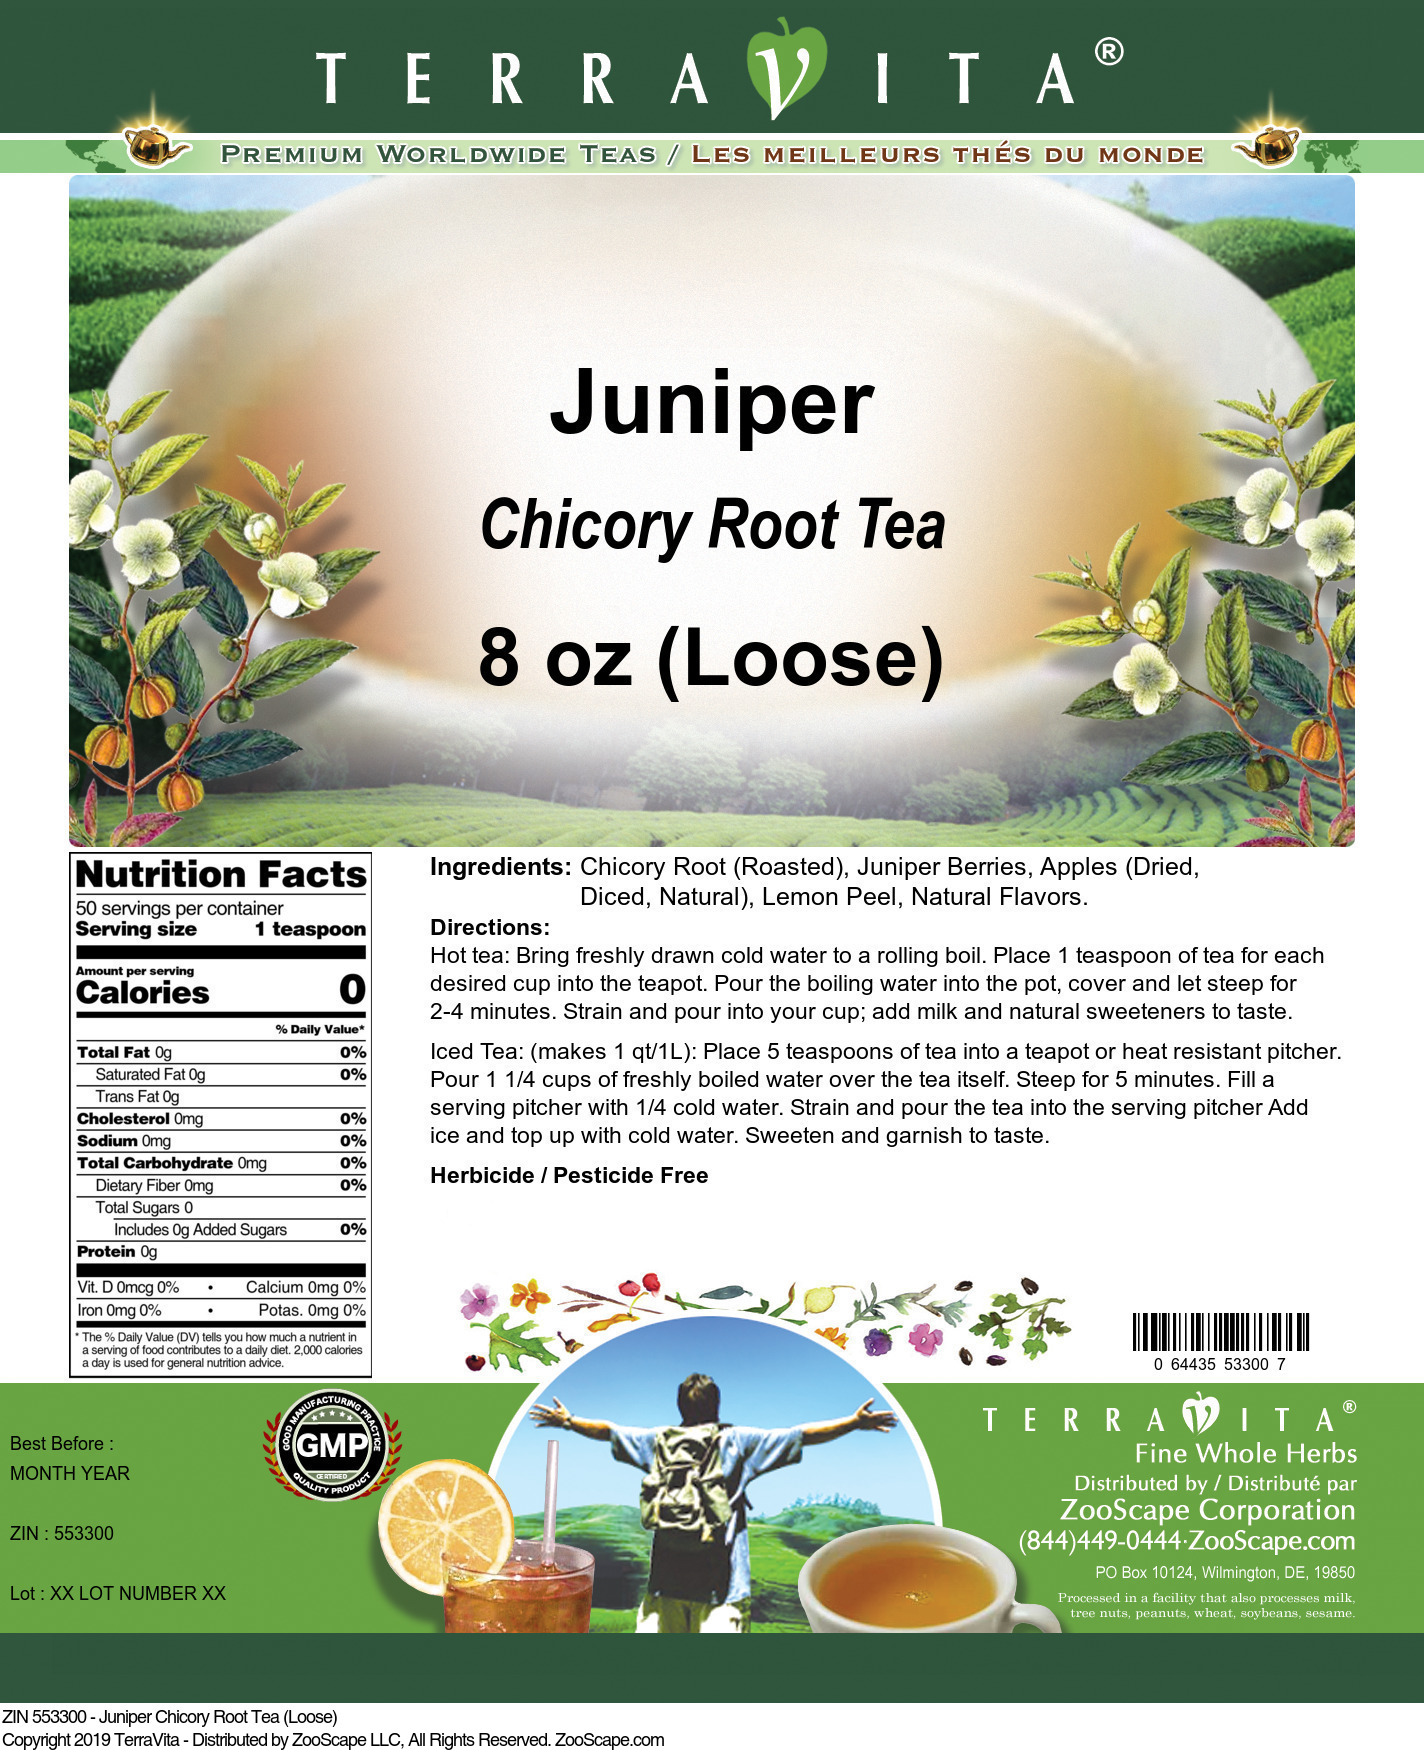 Juniper Chicory Root Tea (Loose) - Label